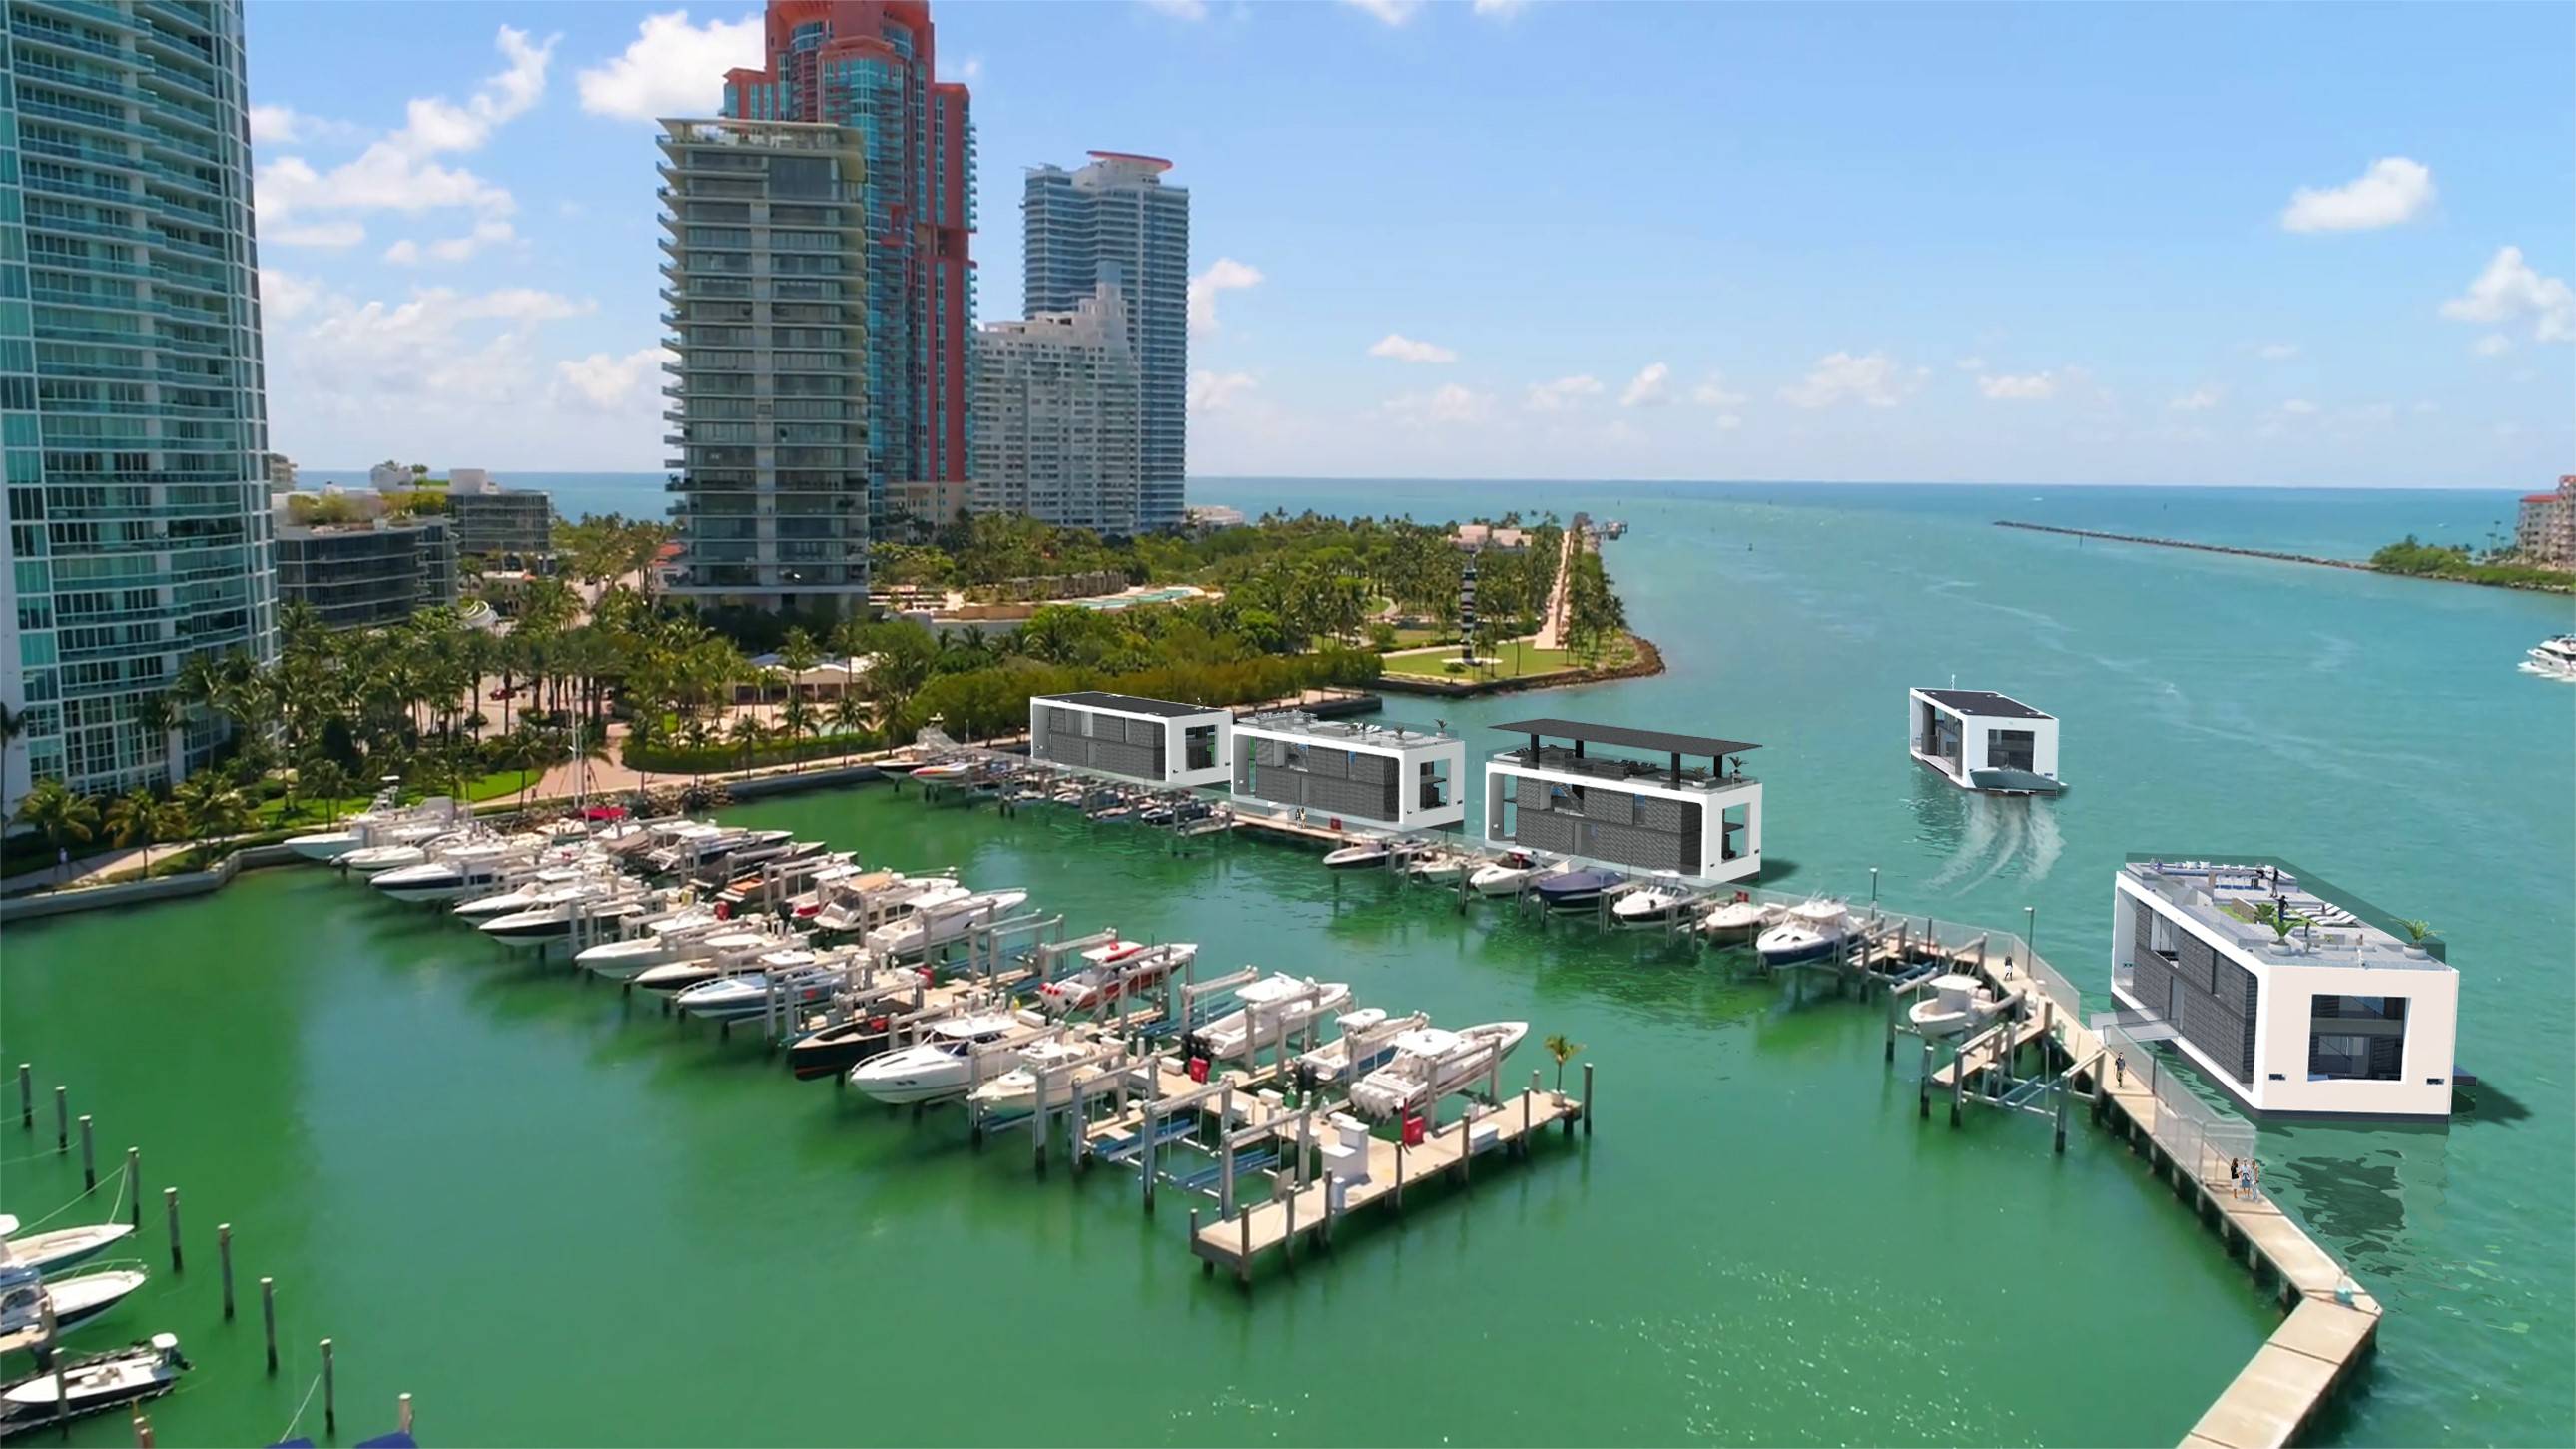 iARKUPi 75 iFloatingi iHomei To Debut At Miami Yacht Show